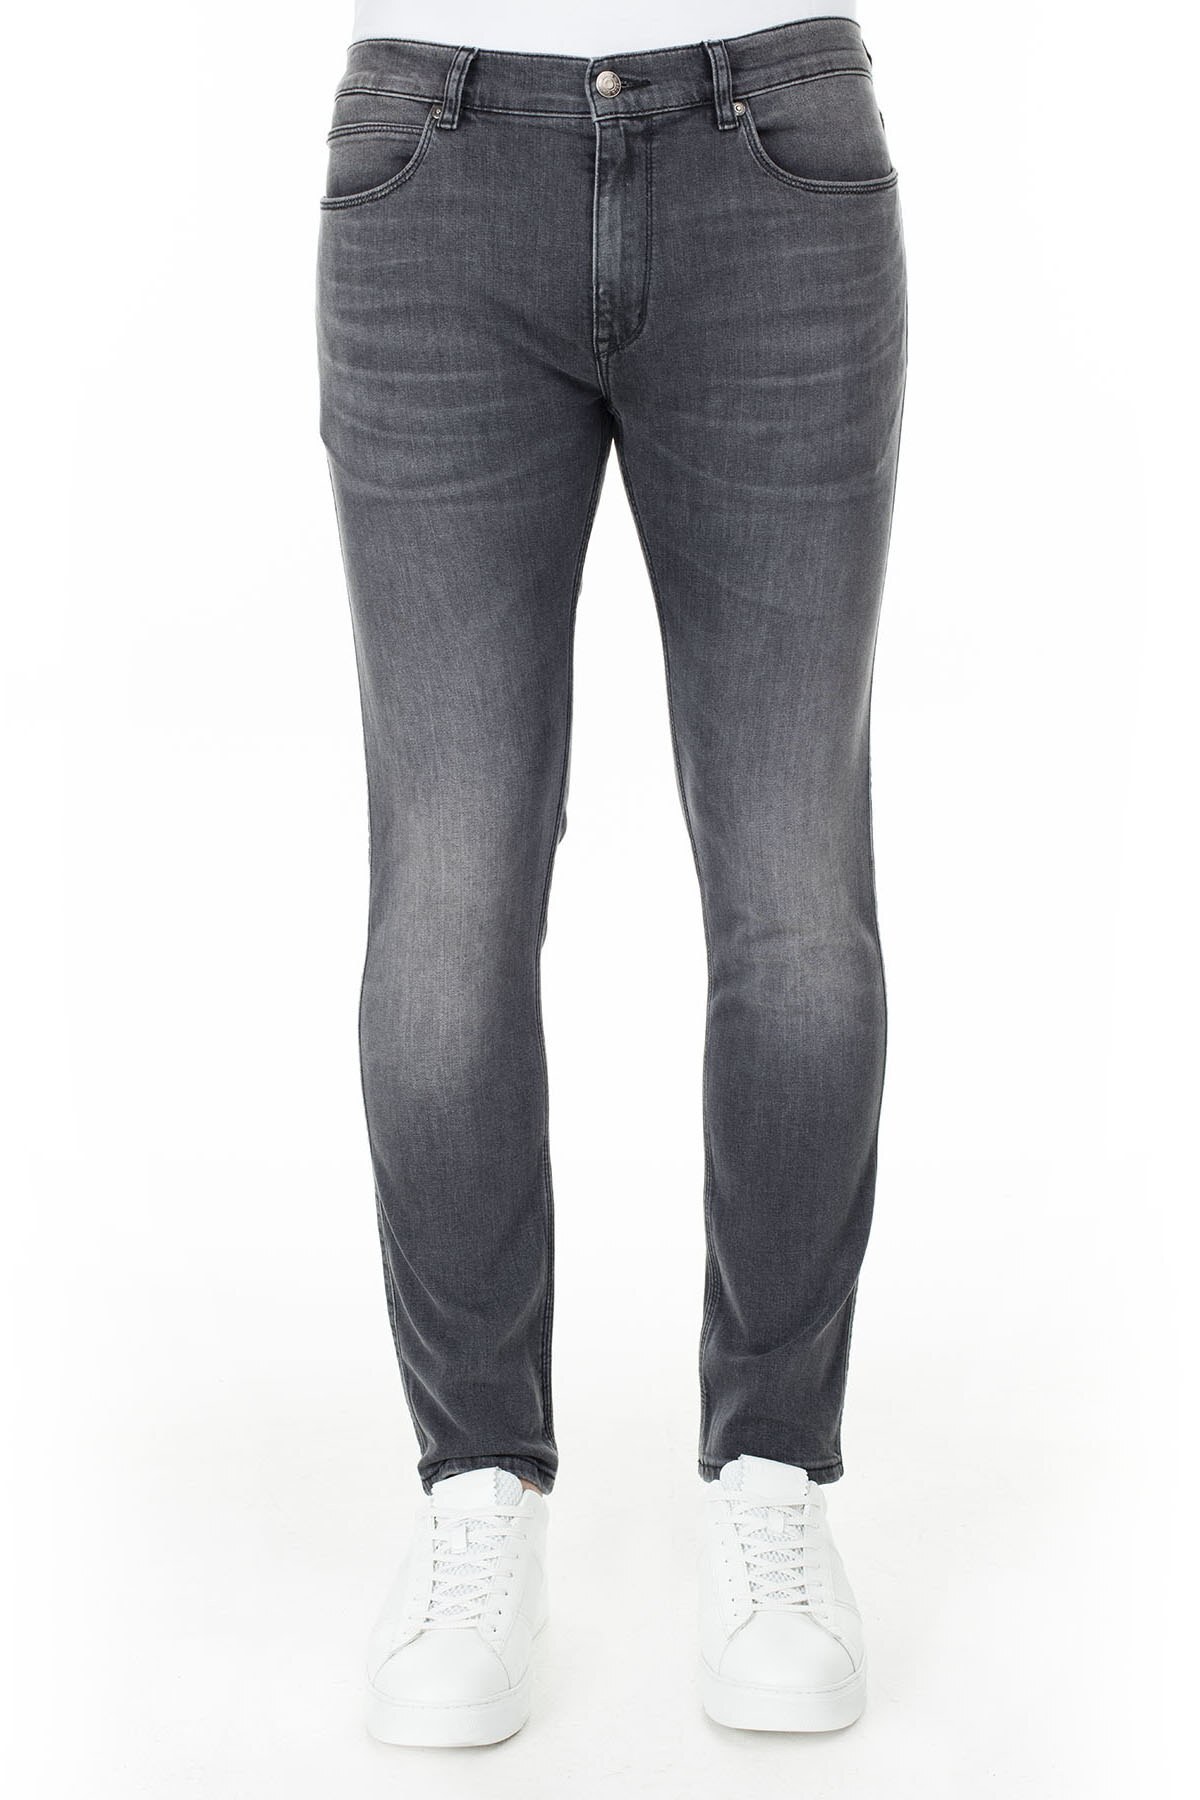 Hugo Boss Skinny Fit Jeans Erkek Kot Pantolon 50426680 020 FÜME